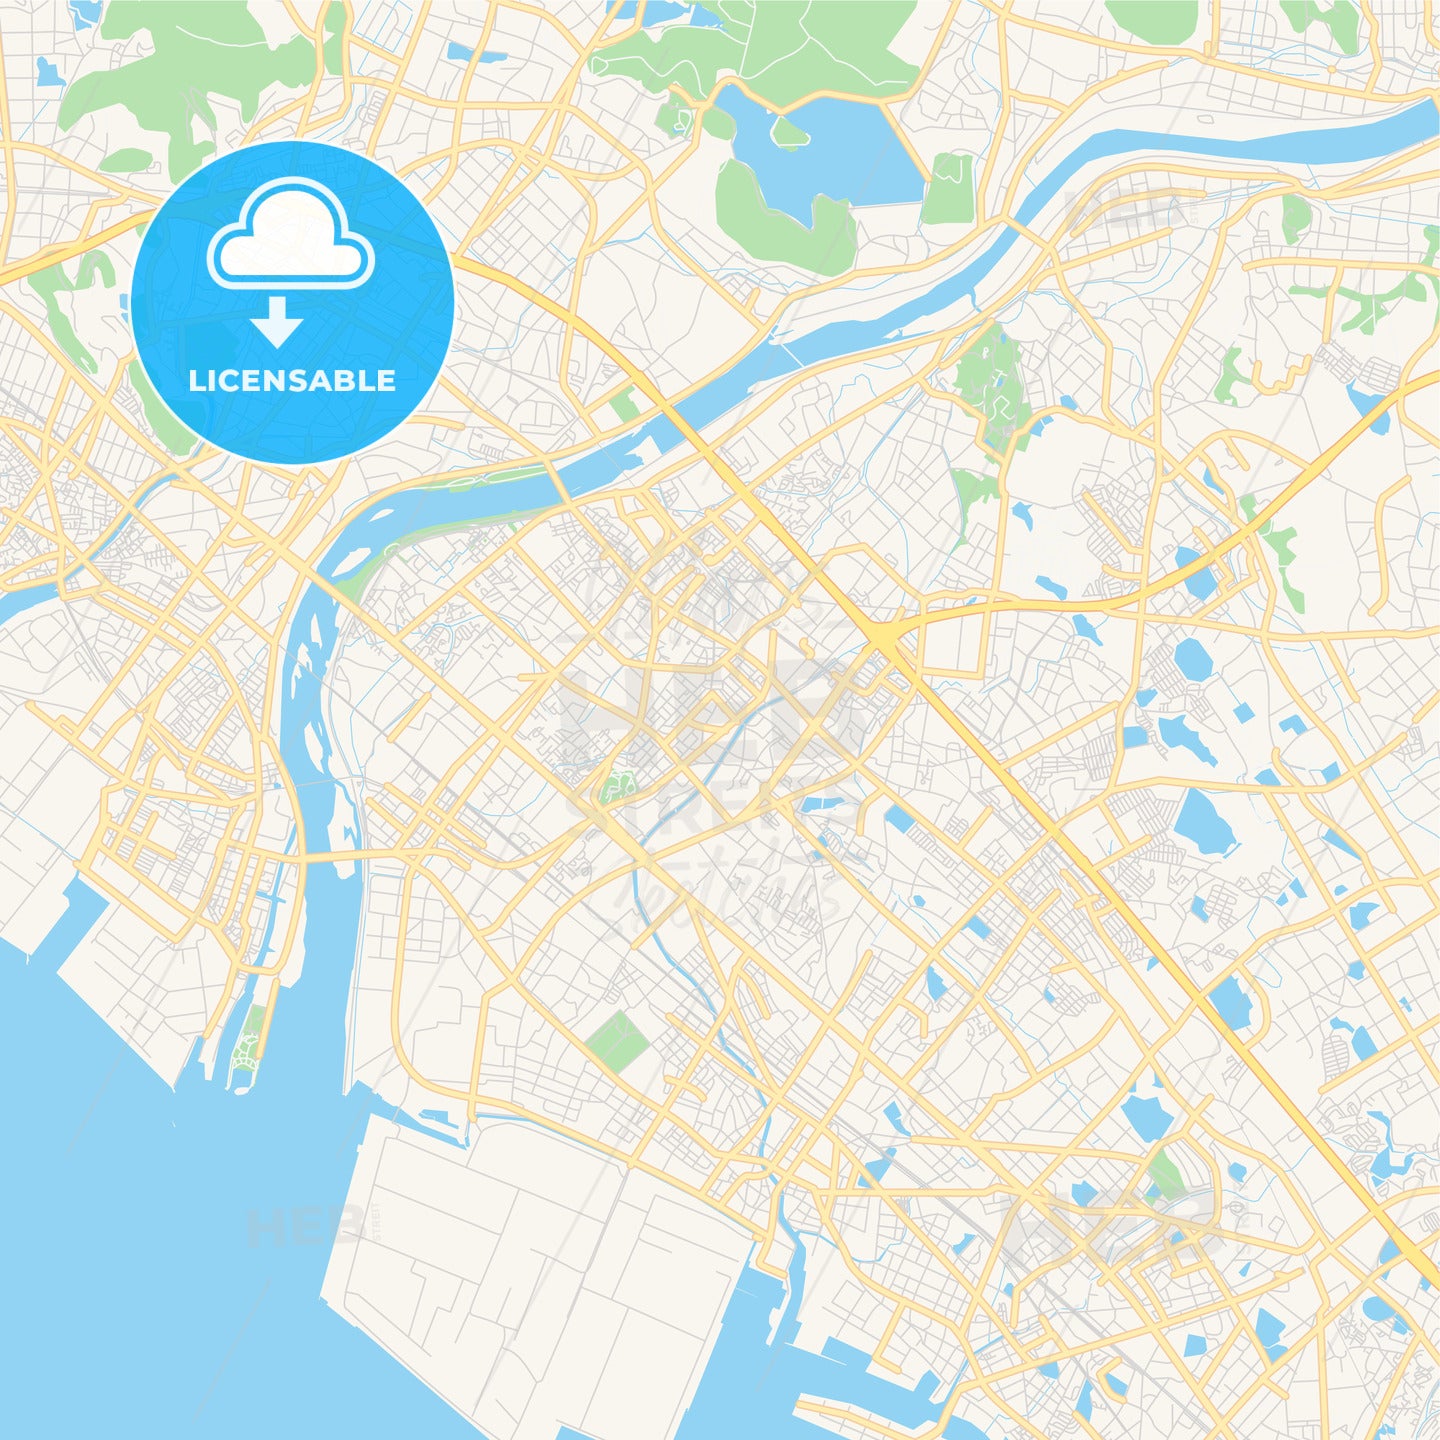 Printable street map of Kakogawa, Japan